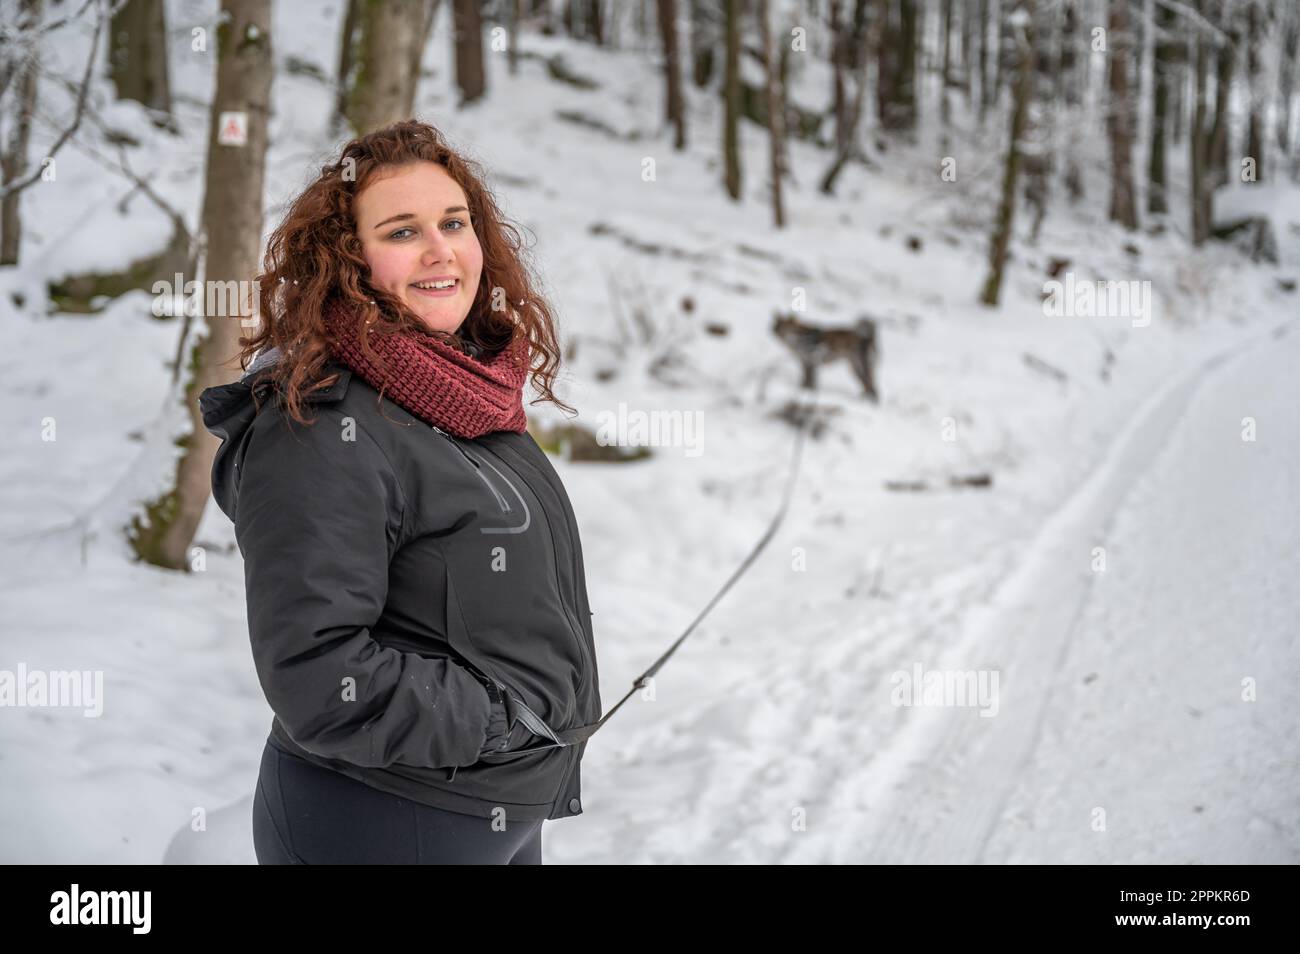 Eine junge Frau mit braunem lockigem Haar und warmer Kleidung lächelt und schaut in die Kamera, geht im Winter mit viel Schnee mit ihrem grauen akita inu Hund im Wald spazieren Stockfoto